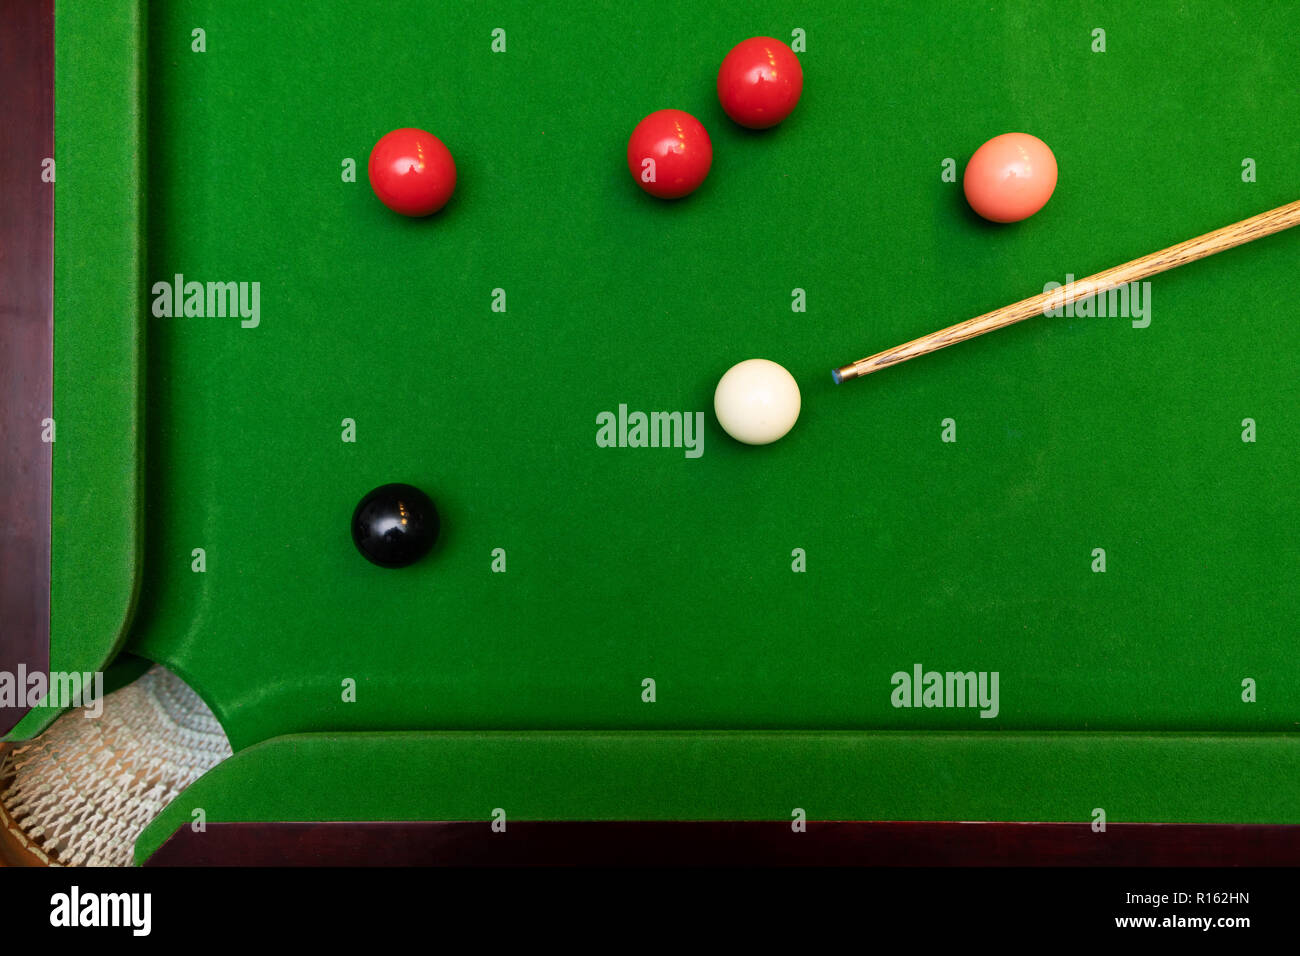 Schwarze Kugel Schuß im Snooker Spiel. top View Stockfoto